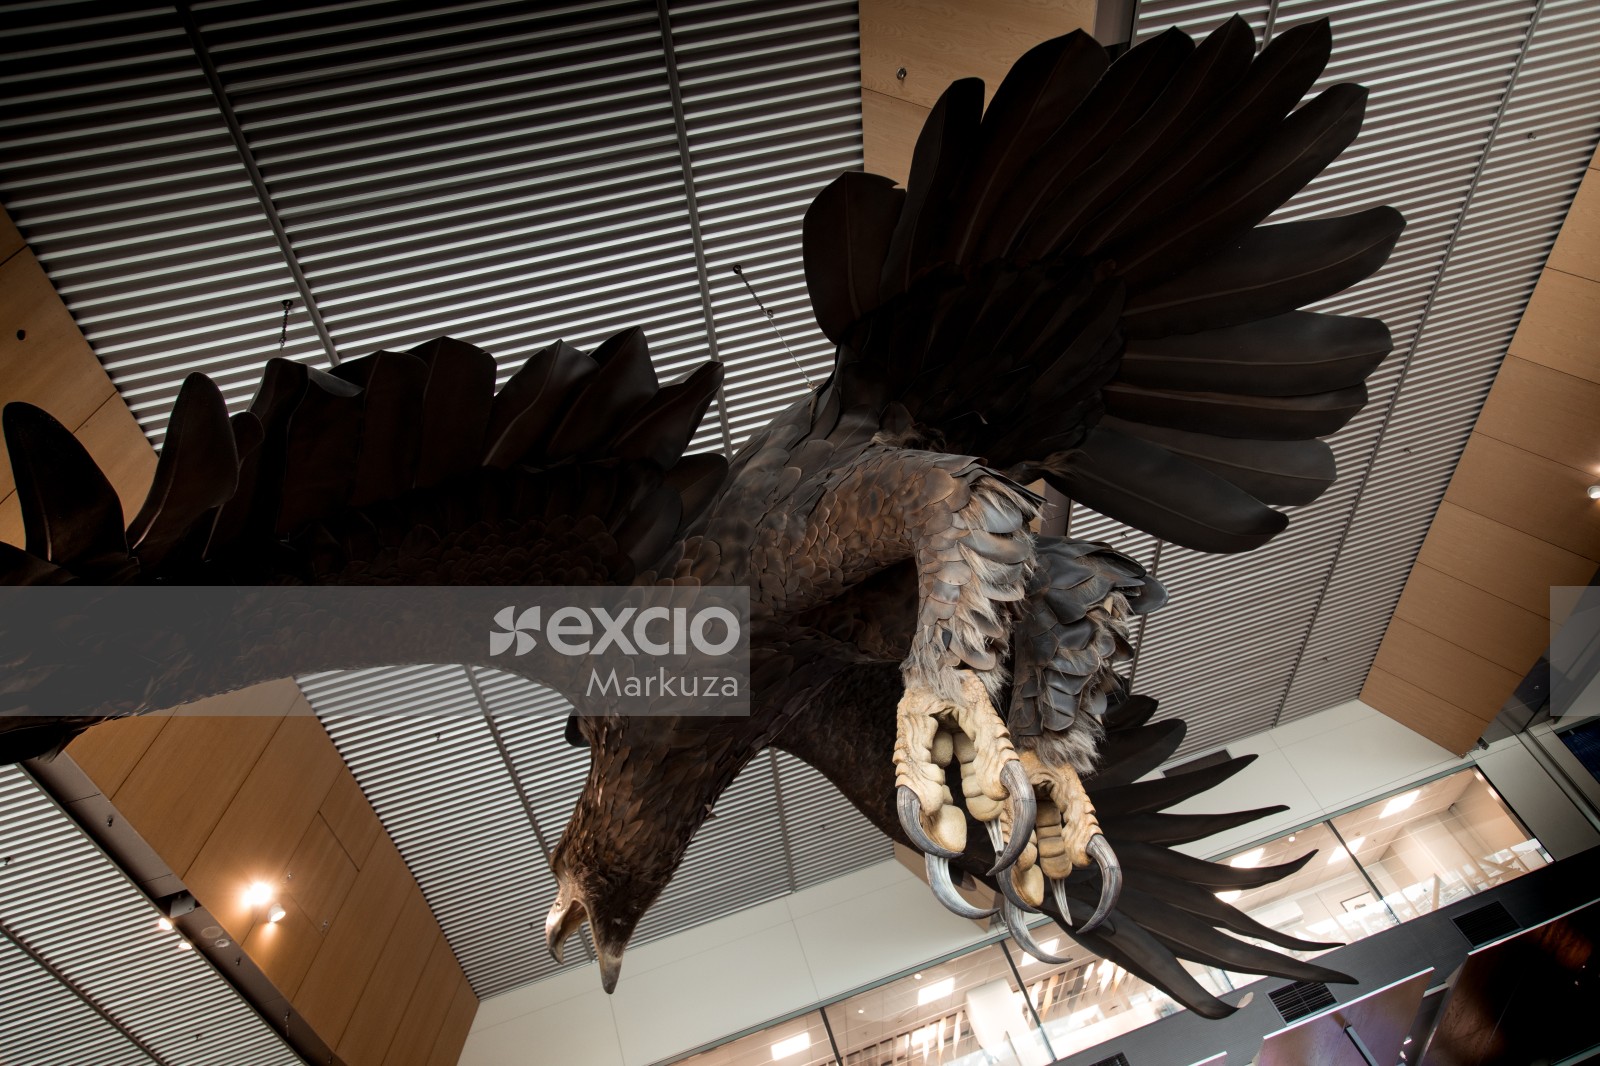 Eagle's giant talon